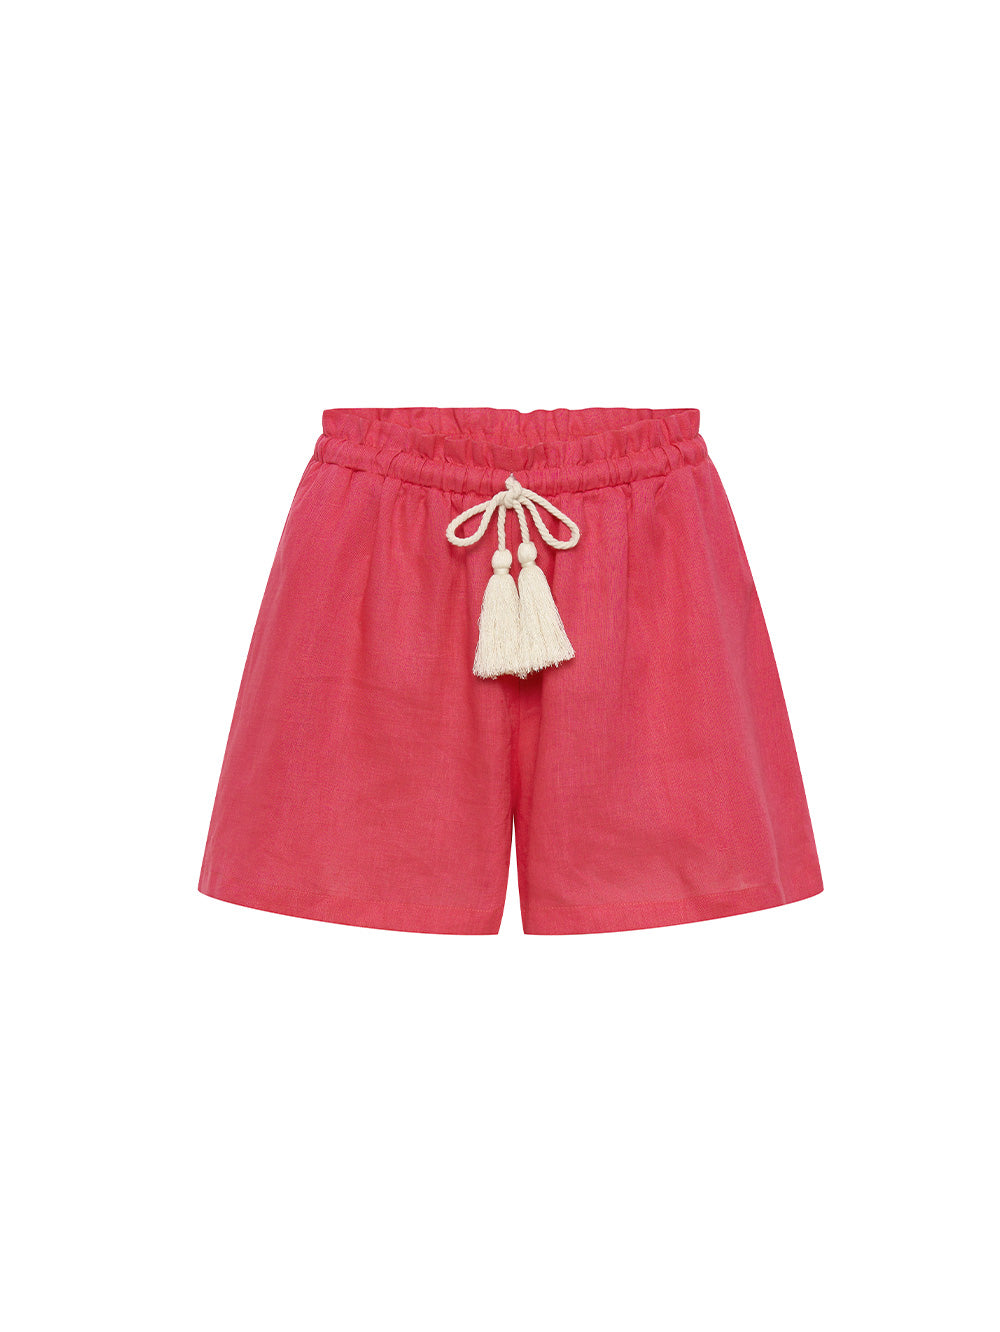 KIVARI Jacana Short | Pink Shorts